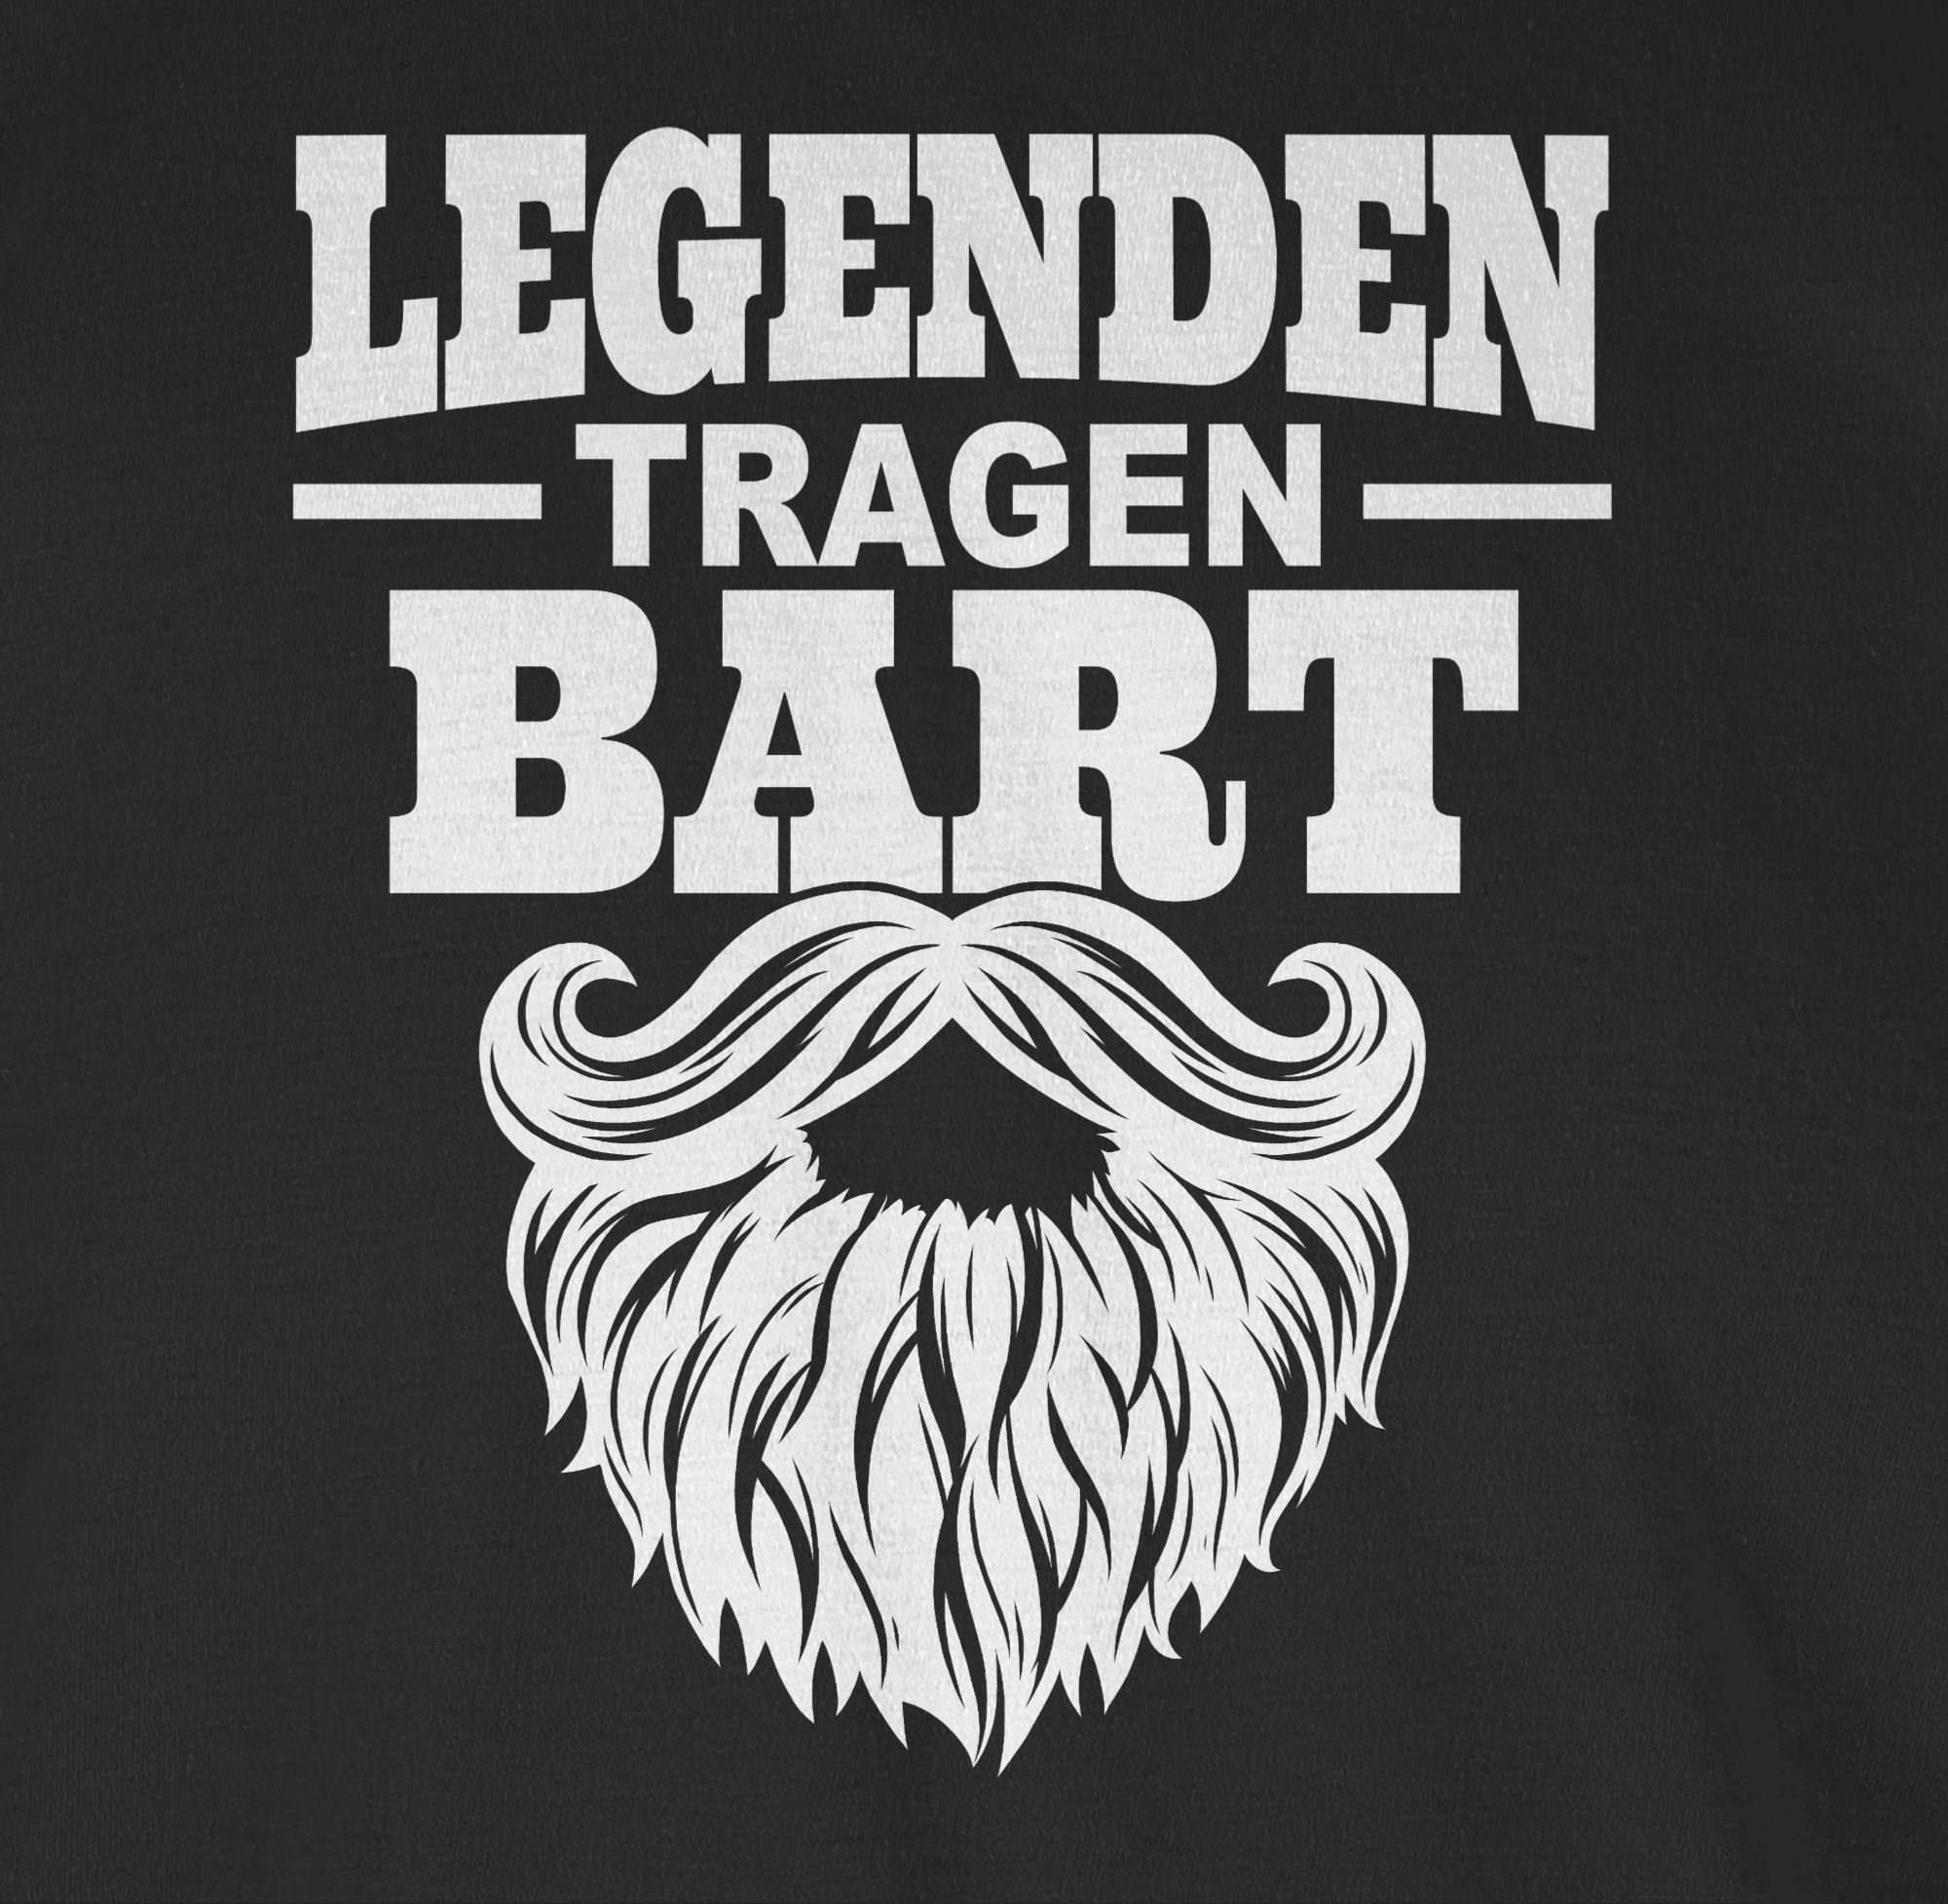 Shirtracer T-Shirt Sprüche weiß mit 01 Schwarz Statement tragen Bart Spruch Legenden